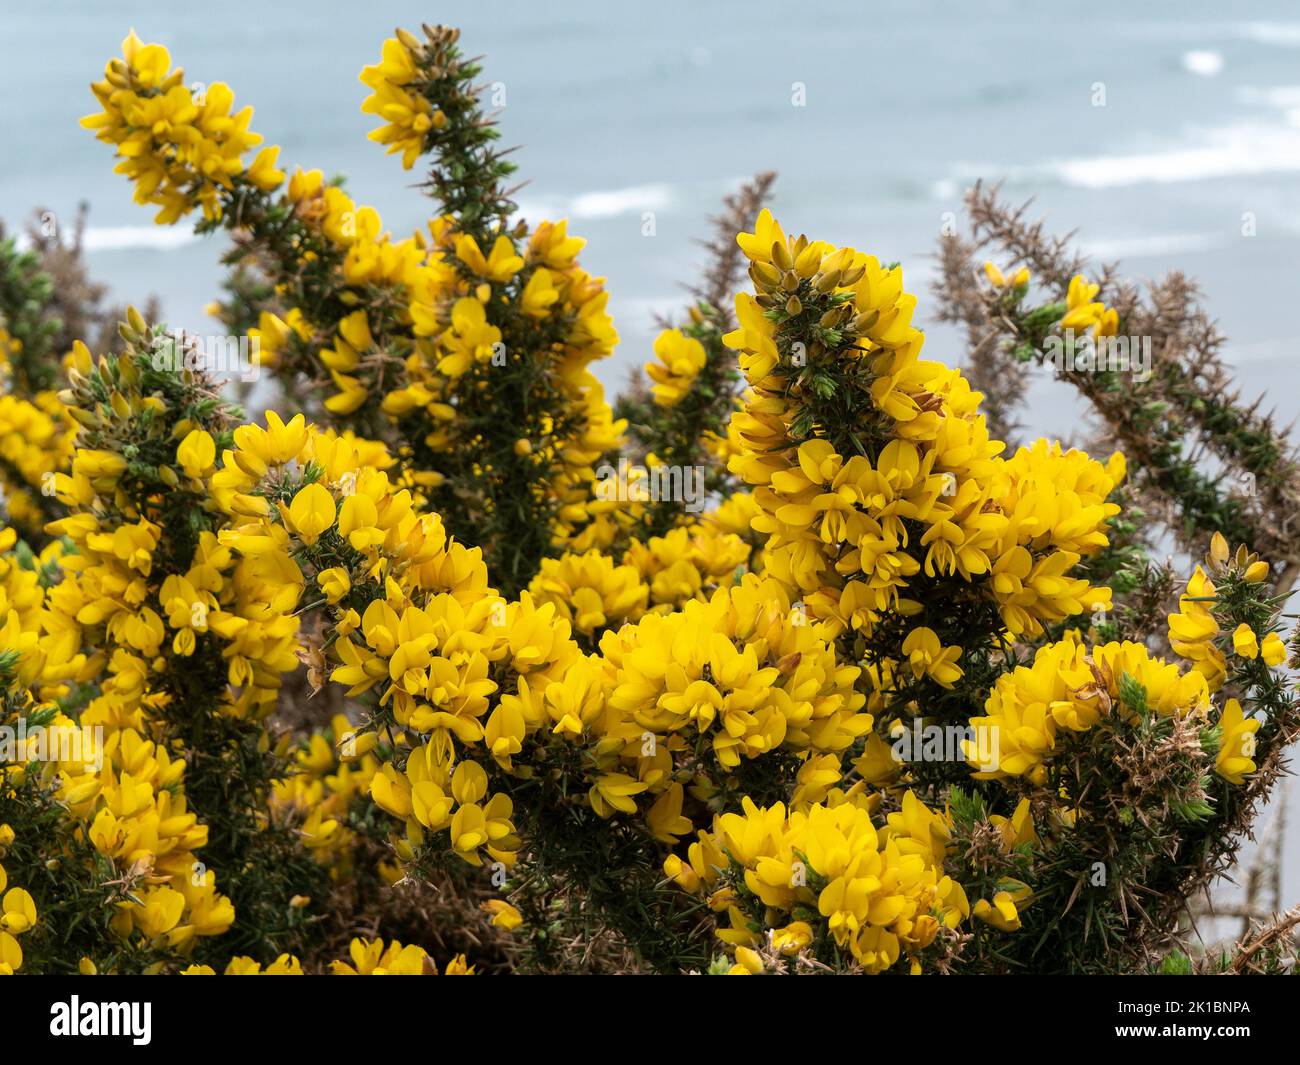 Ci sono molti fiori gialli. Una pianta con infiorescenze gialle. Primo piano dell'impianto. Foto Stock